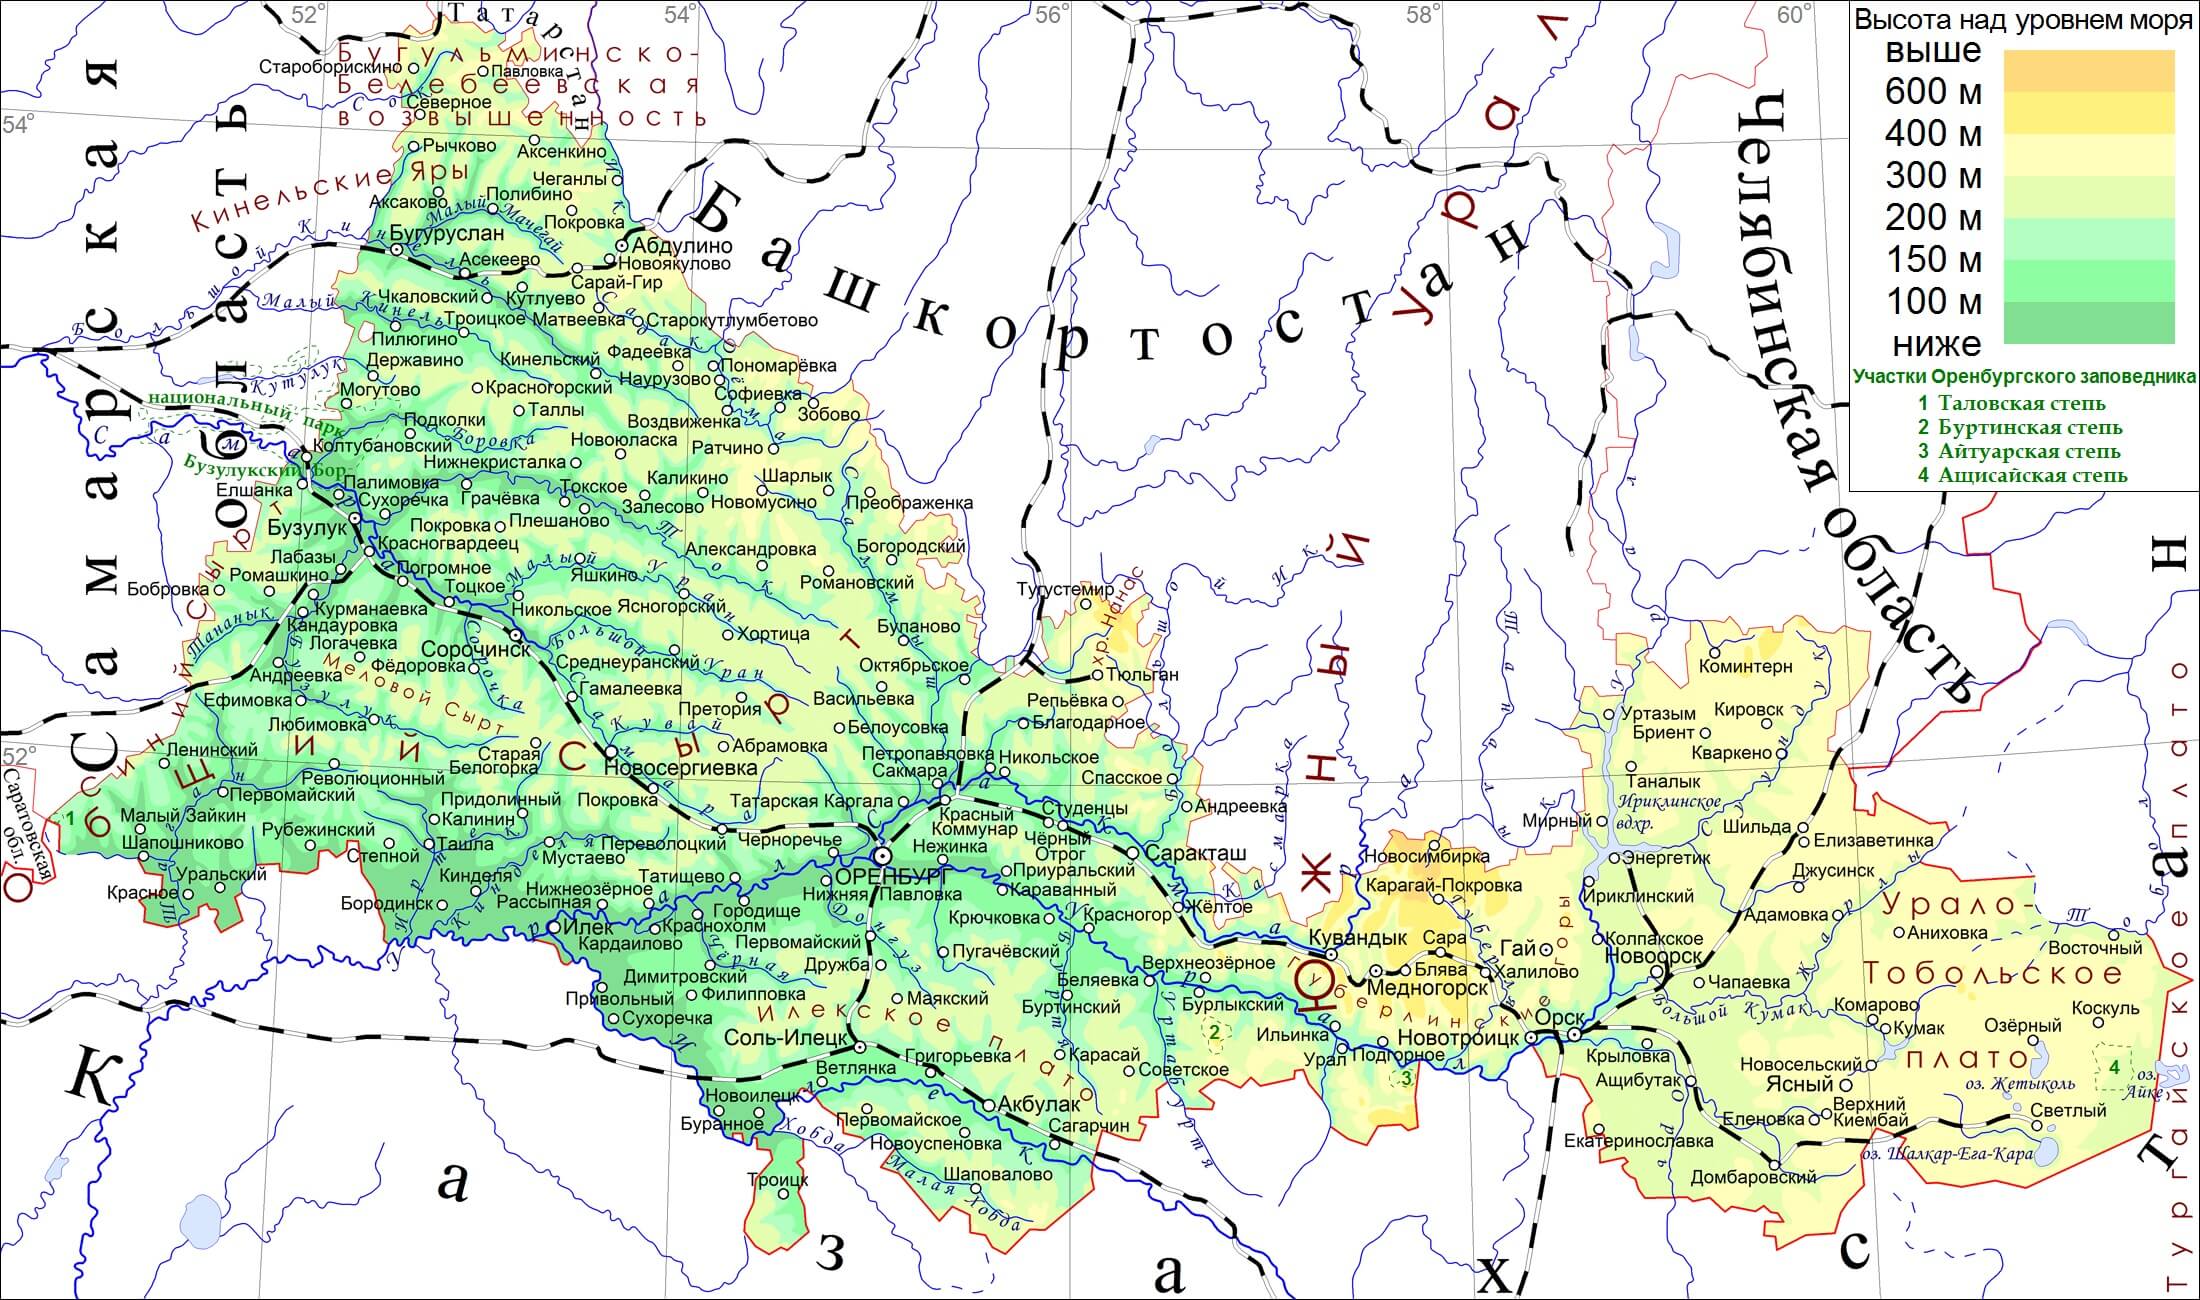 Самара и оренбург карта